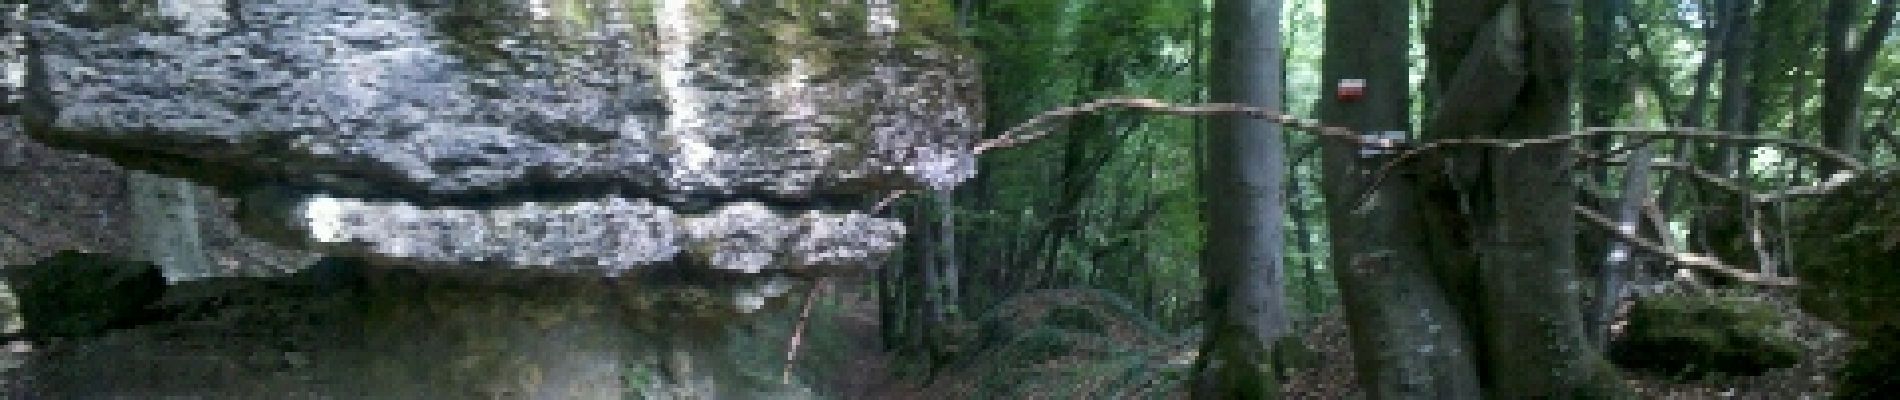 Randonnée Marche Ancy-Dornot - Dornot - Croix saint clément - pierre qui tourne - rochers de la Fraze - Photo